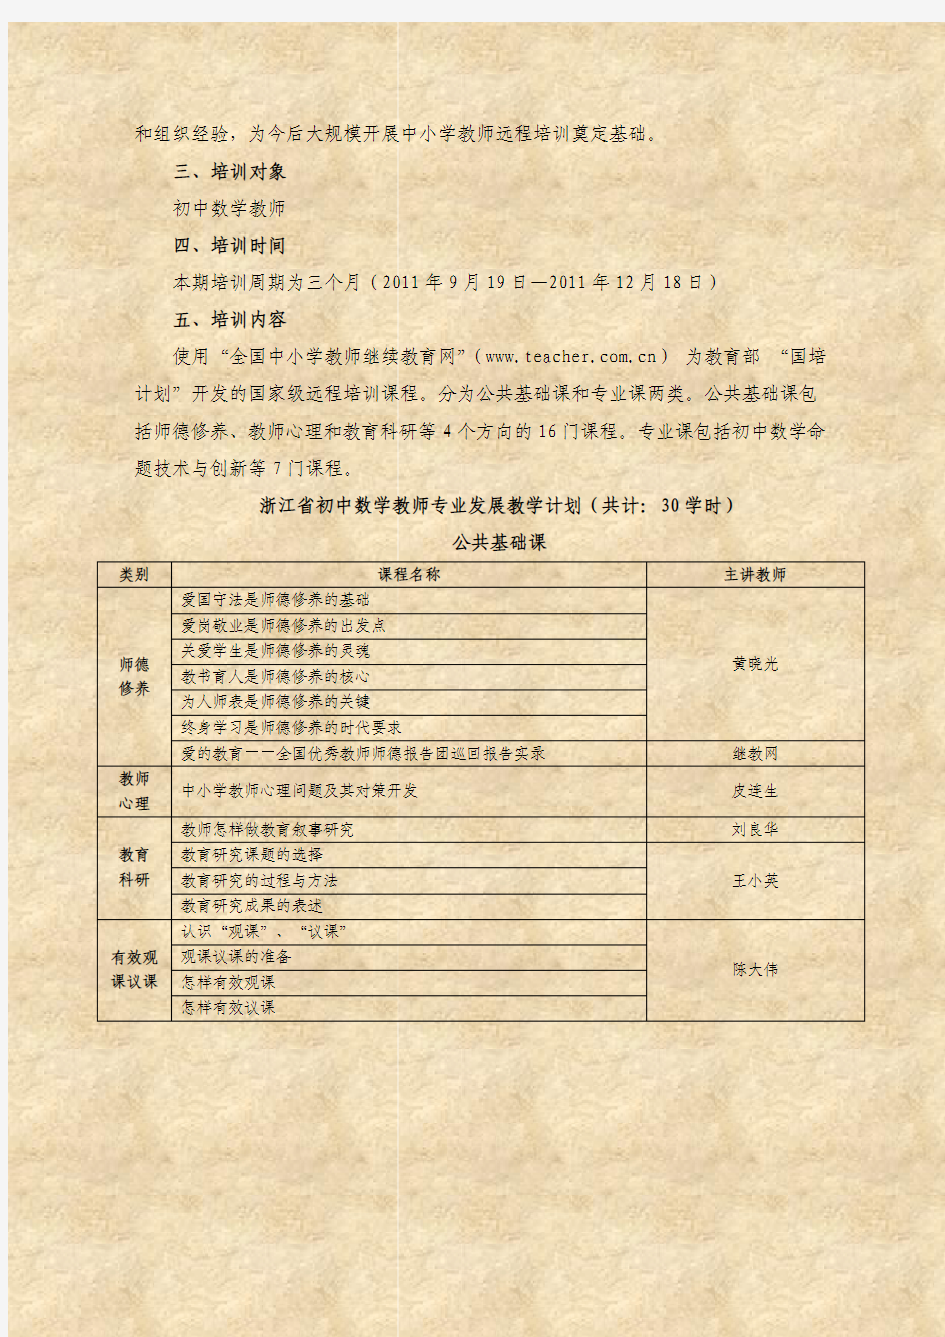 浙江省初中数学教师专业发展培训 实施方案